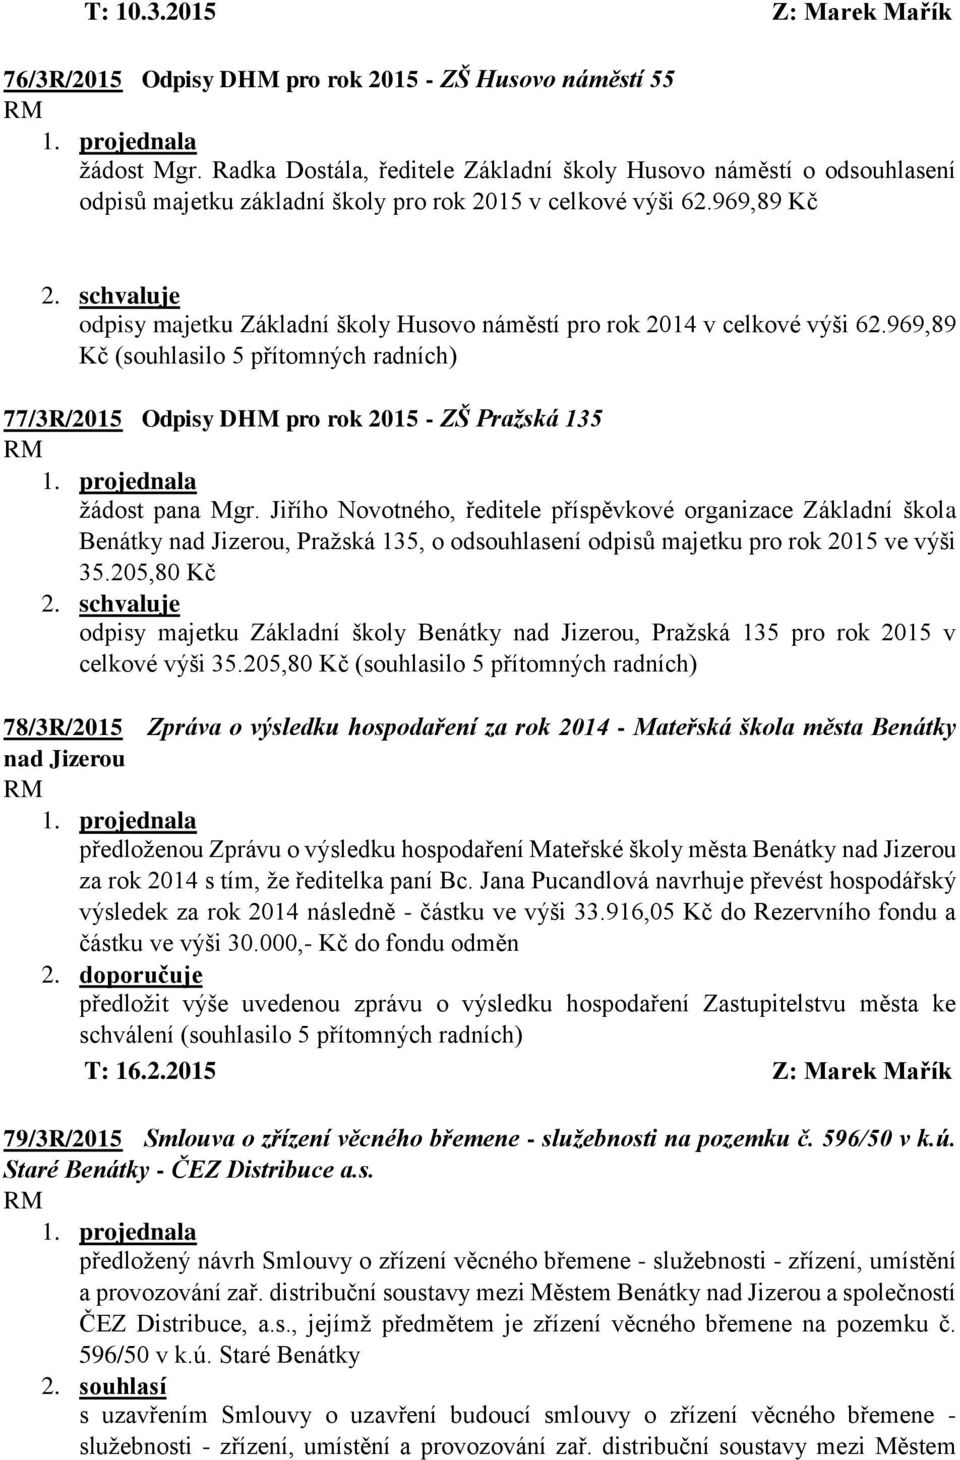 schvaluje odpisy majetku Základní školy Husovo náměstí pro rok 2014 v celkové výši 62.969,89 Kč (souhlasilo 5 77/3R/2015 Odpisy DHM pro rok 2015 - ZŠ Pražská 135 žádost pana Mgr.